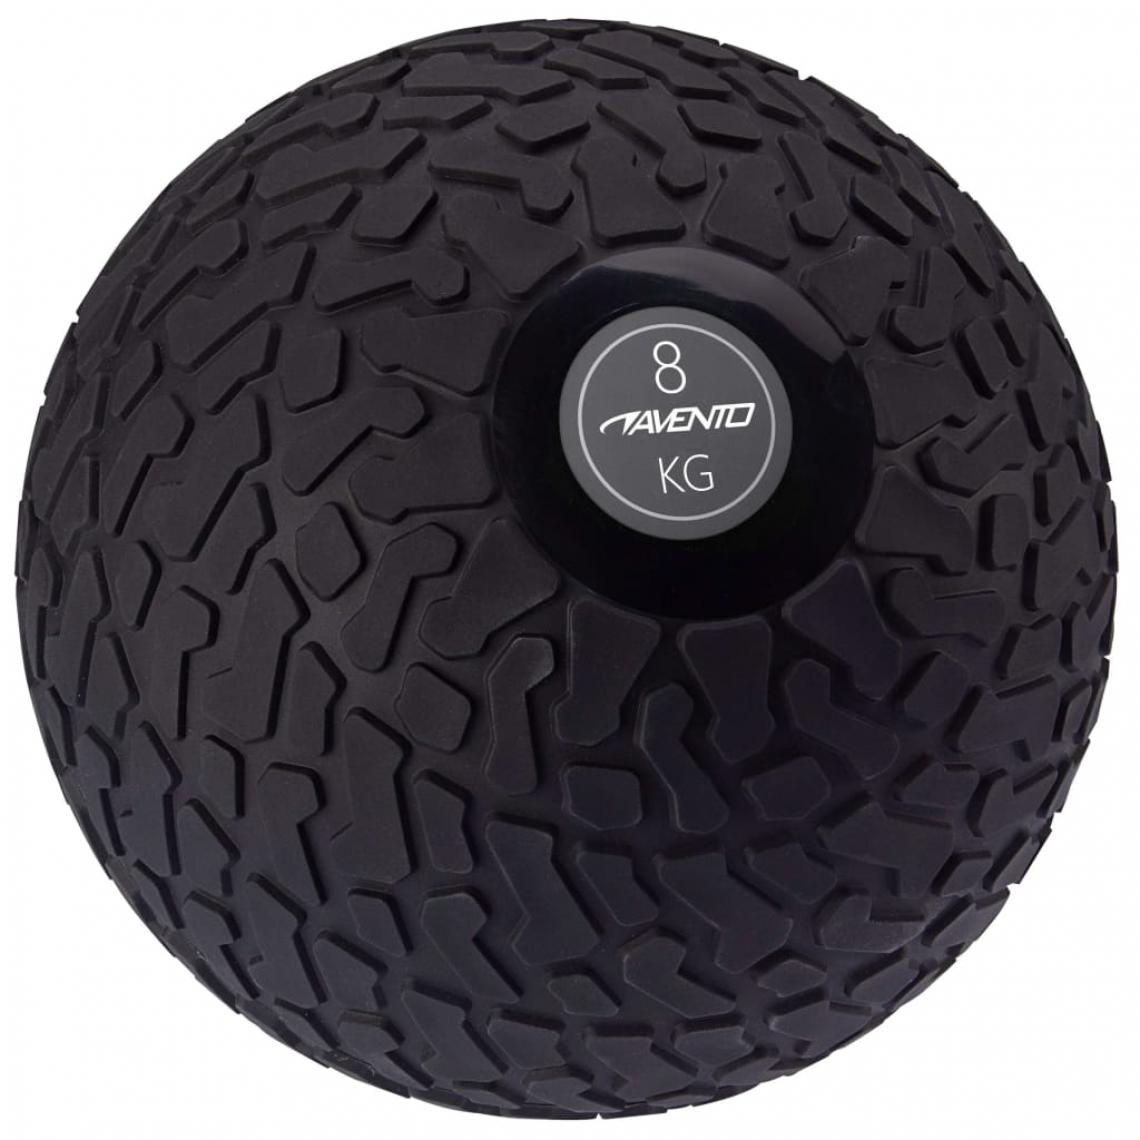 Avento - Avento Balle texturée 8 kg Noir - Jeux de balles